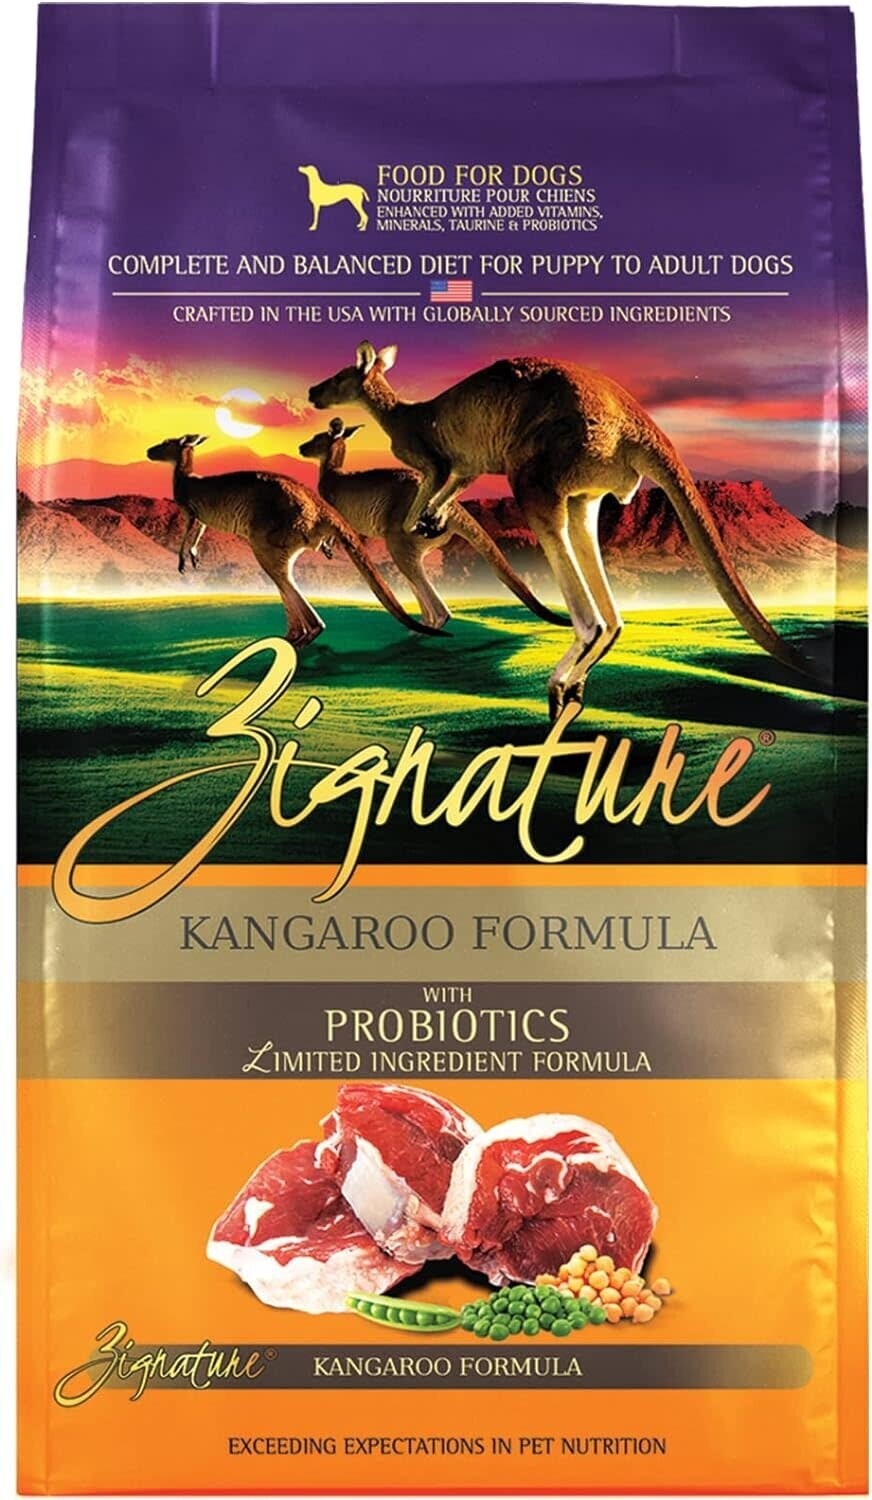 Zignature Kangaroo Formula Limited Ingredient Dog Food 25 lbs